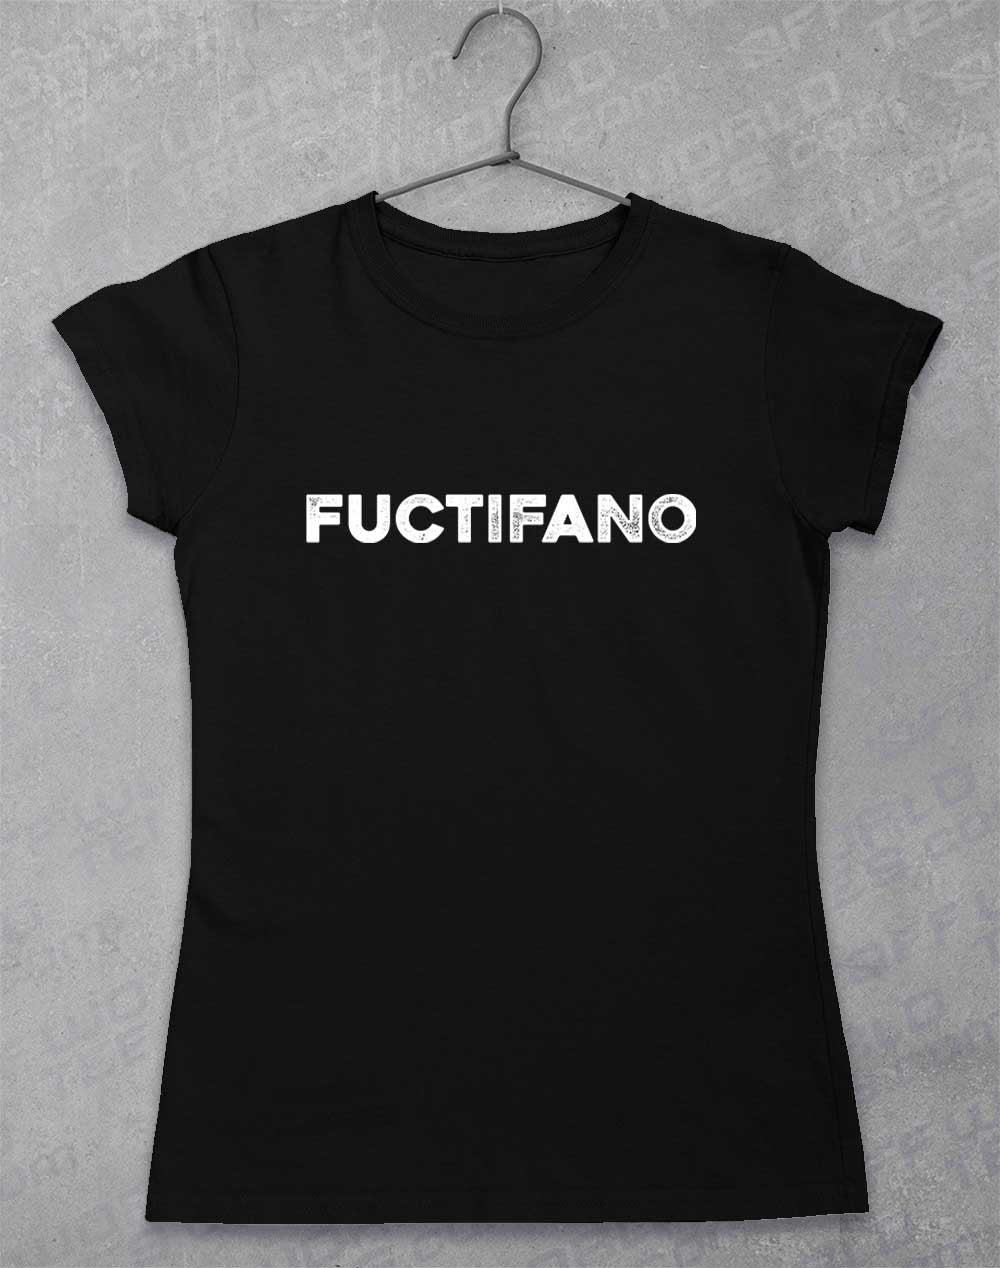 Black - Fuctifano Women's T-Shirt